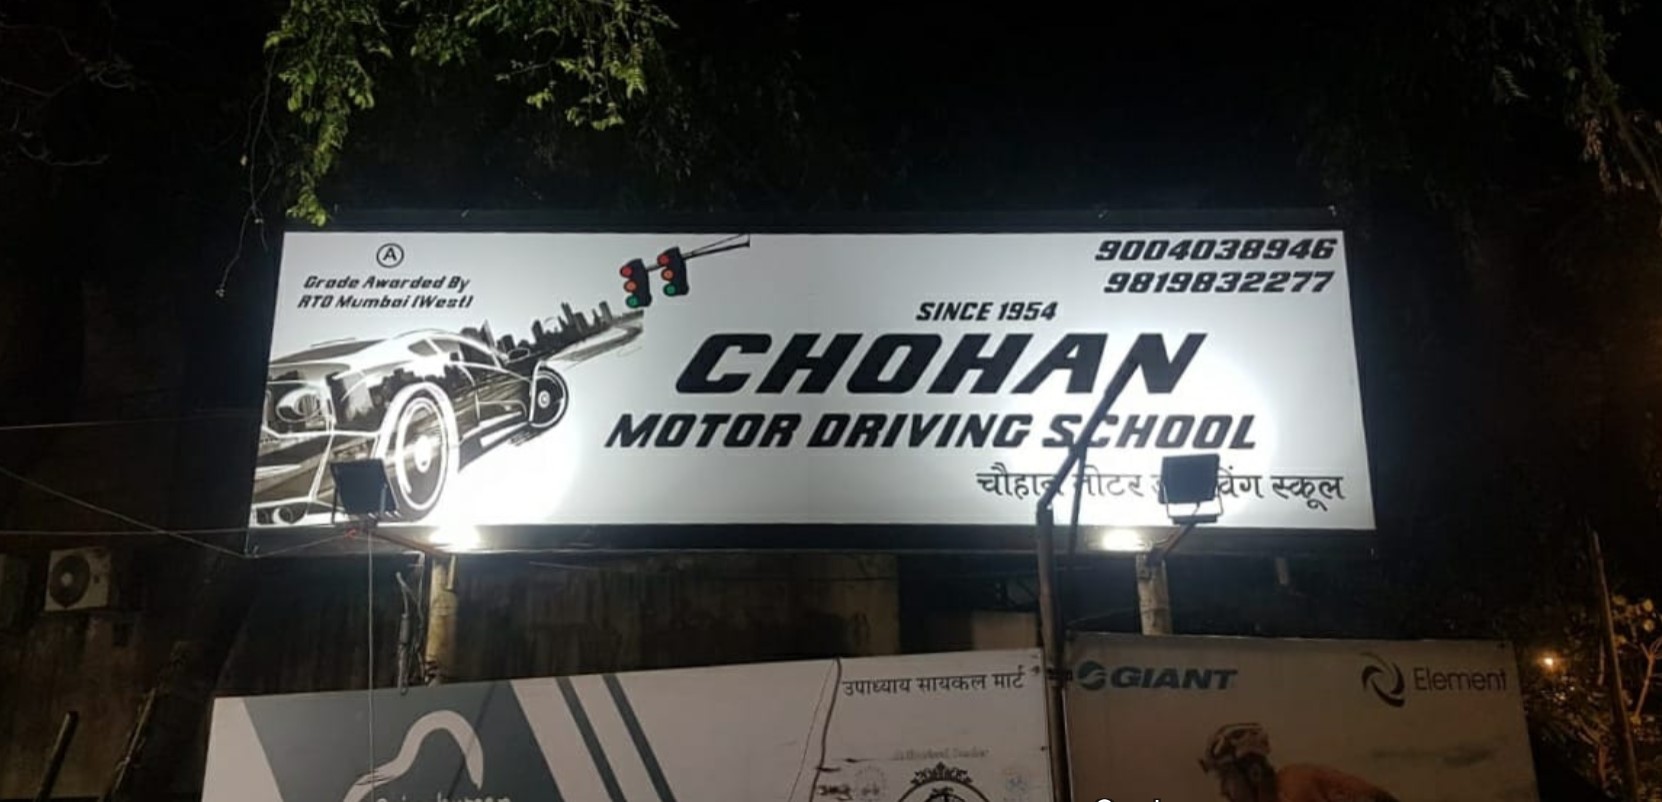 Chohan Motor Driving School in Vile Parle East